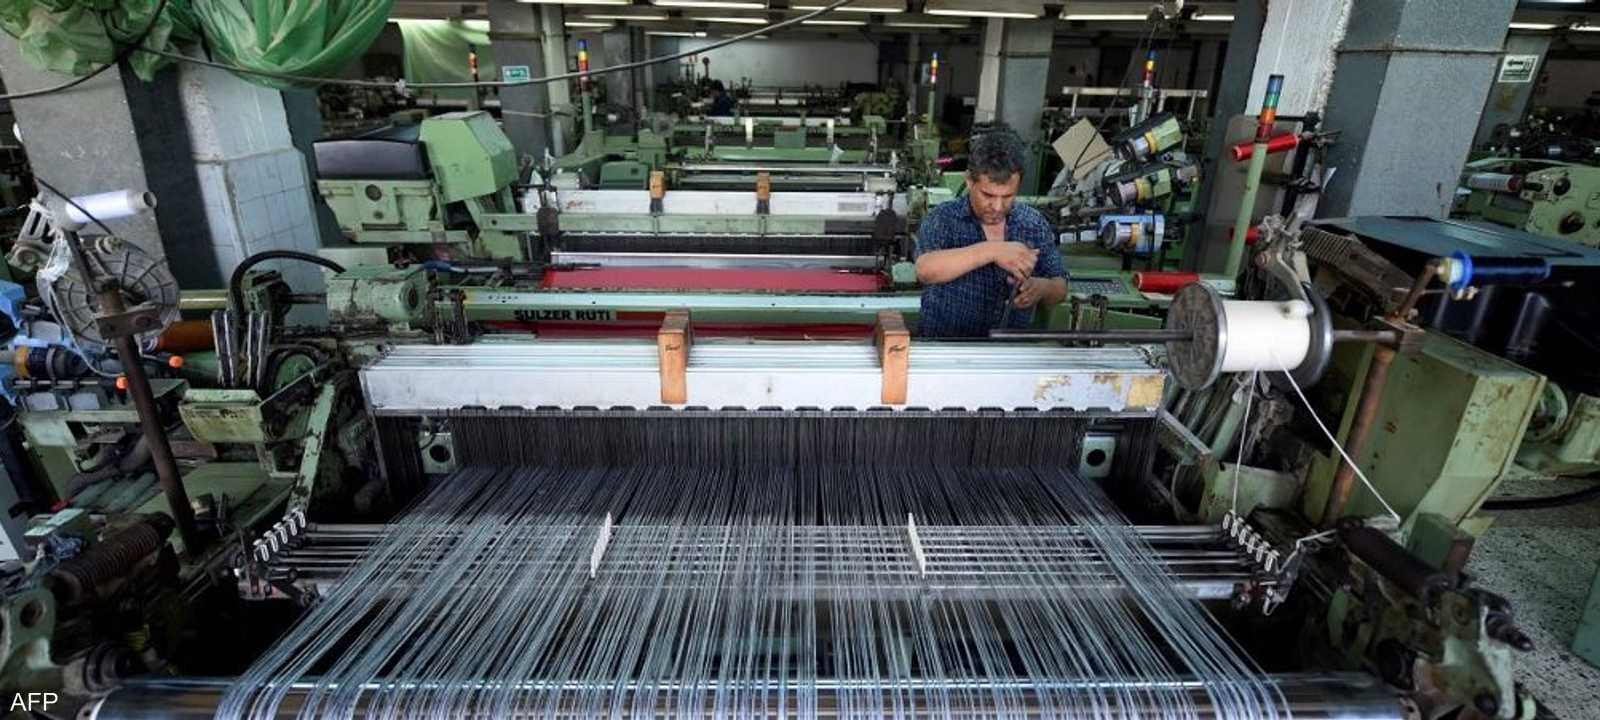 الصناعة يتصدر القطاعات الأكثر تراجعا في إنتاج الوظائف بمصر